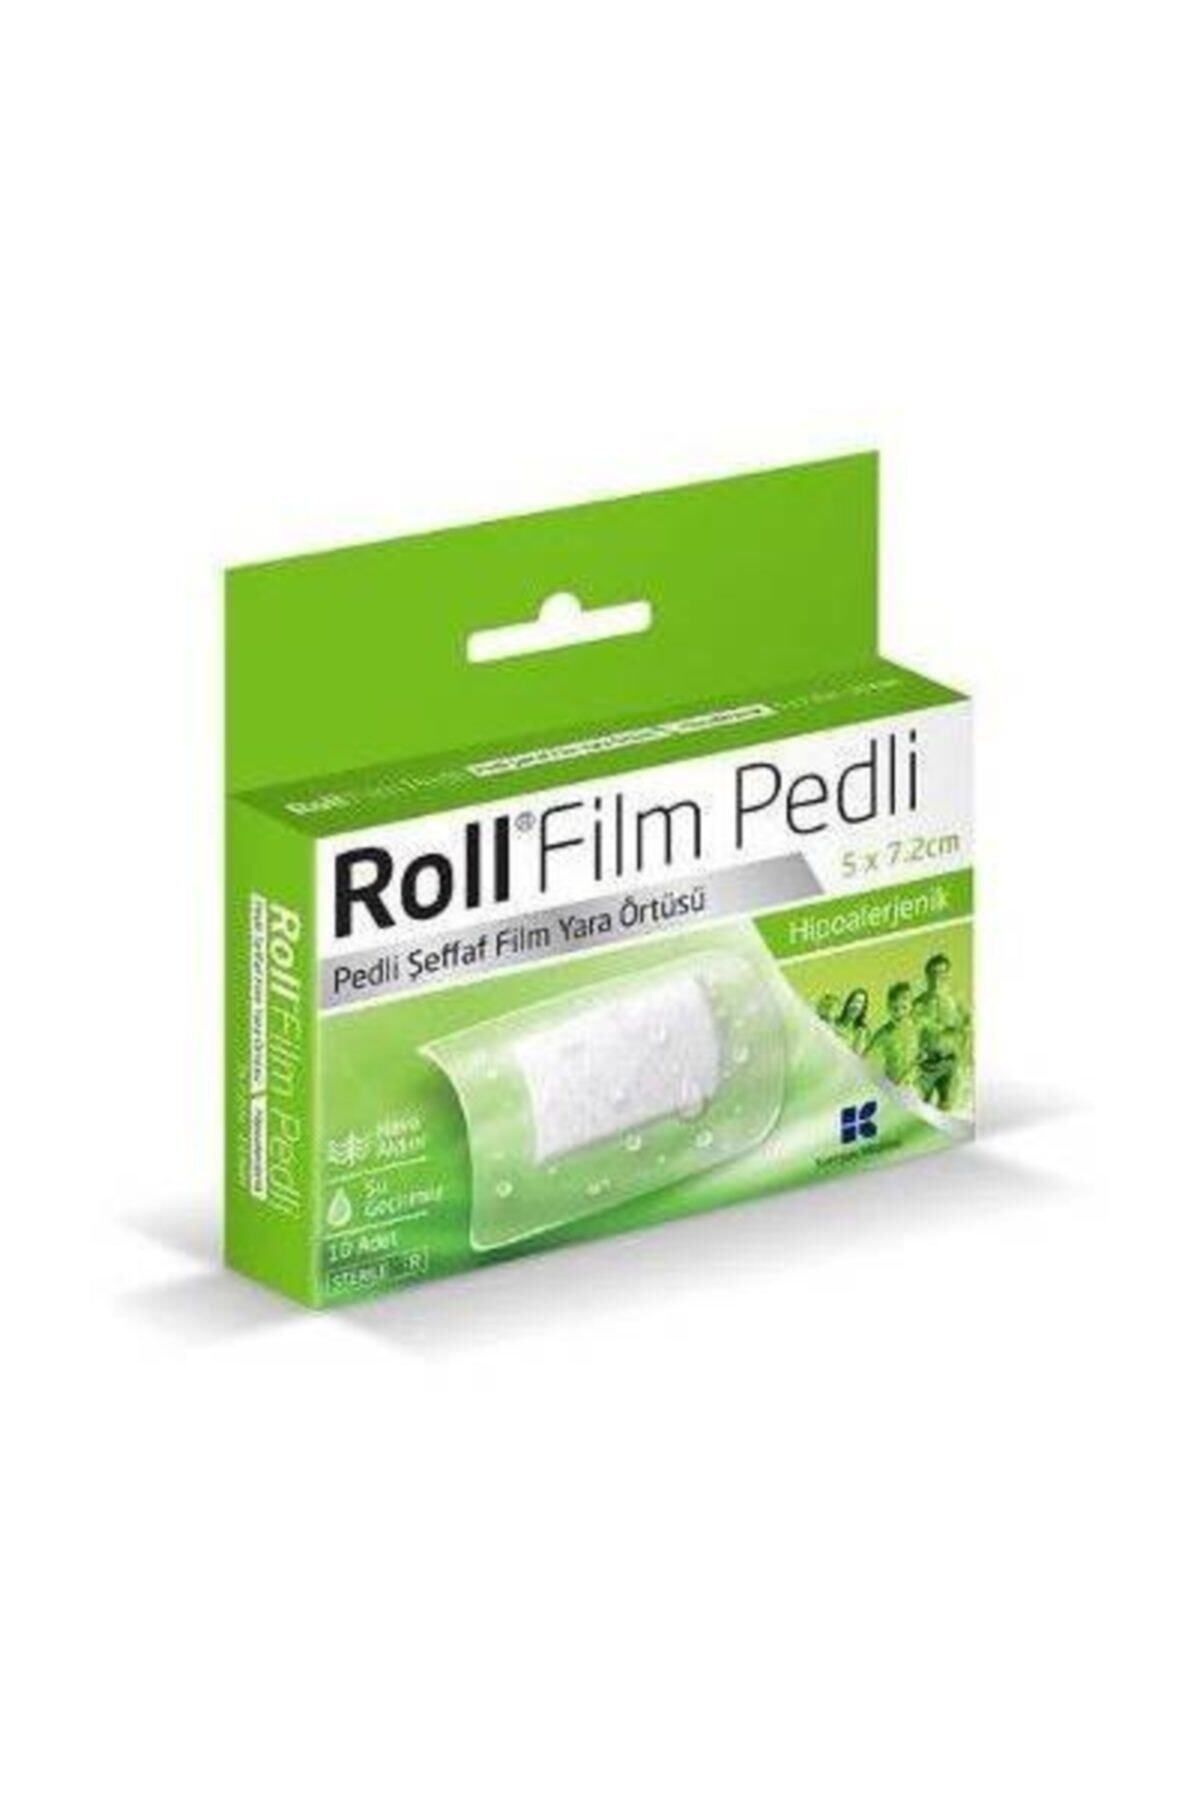 Roll Film Pedli - Steril - Su Geçirmez - Yara Sargısı- Hipoalerjenik - 10 Adet 5x7,2cm.